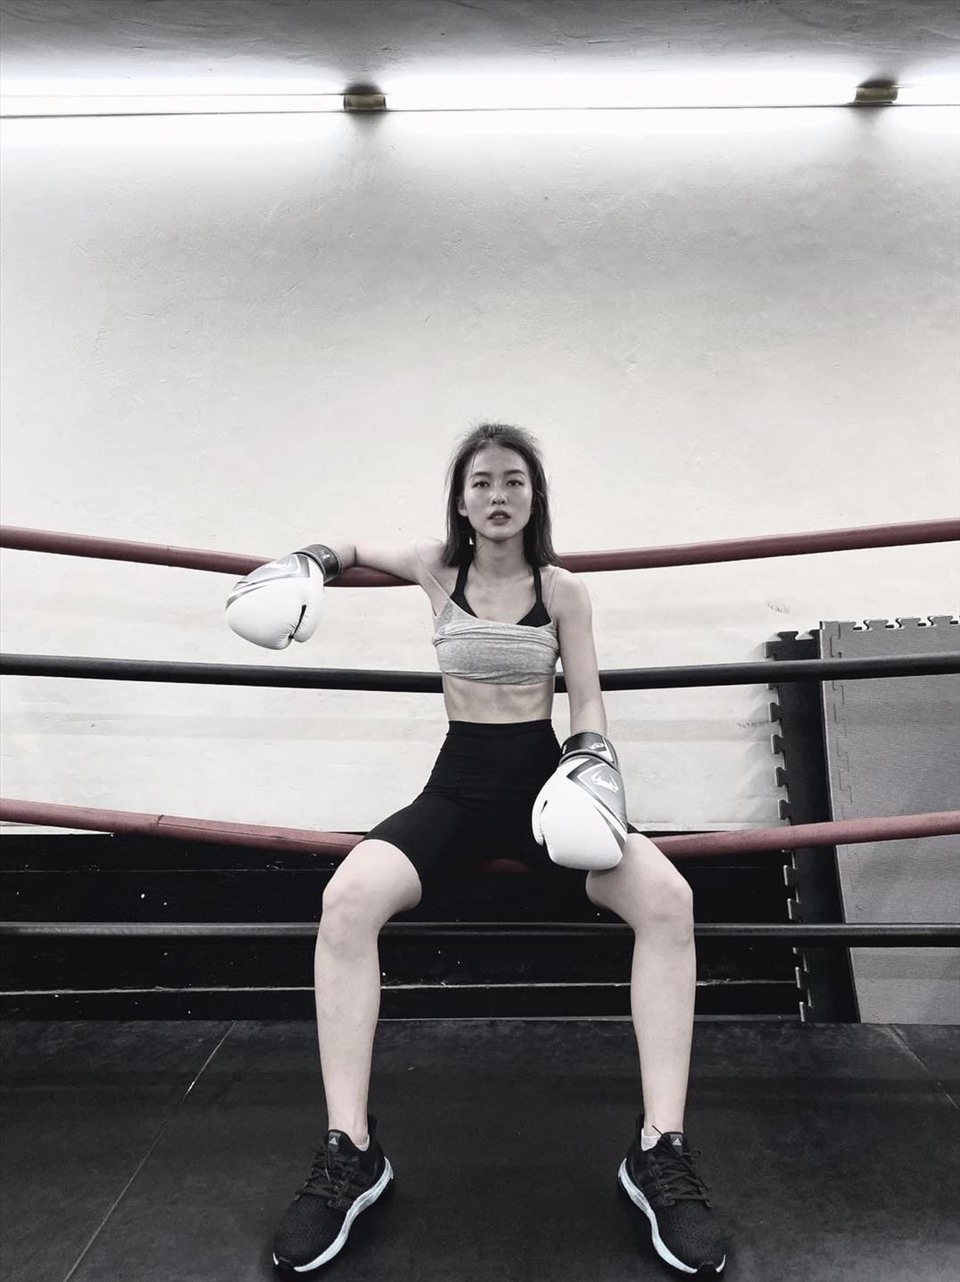 Bộ môn thể thao yêu thích của cô nàng là boxing. Theo Khả Ngân, việc khoẻ đẹp một cách tự nhiên là điều cô hướng đến.